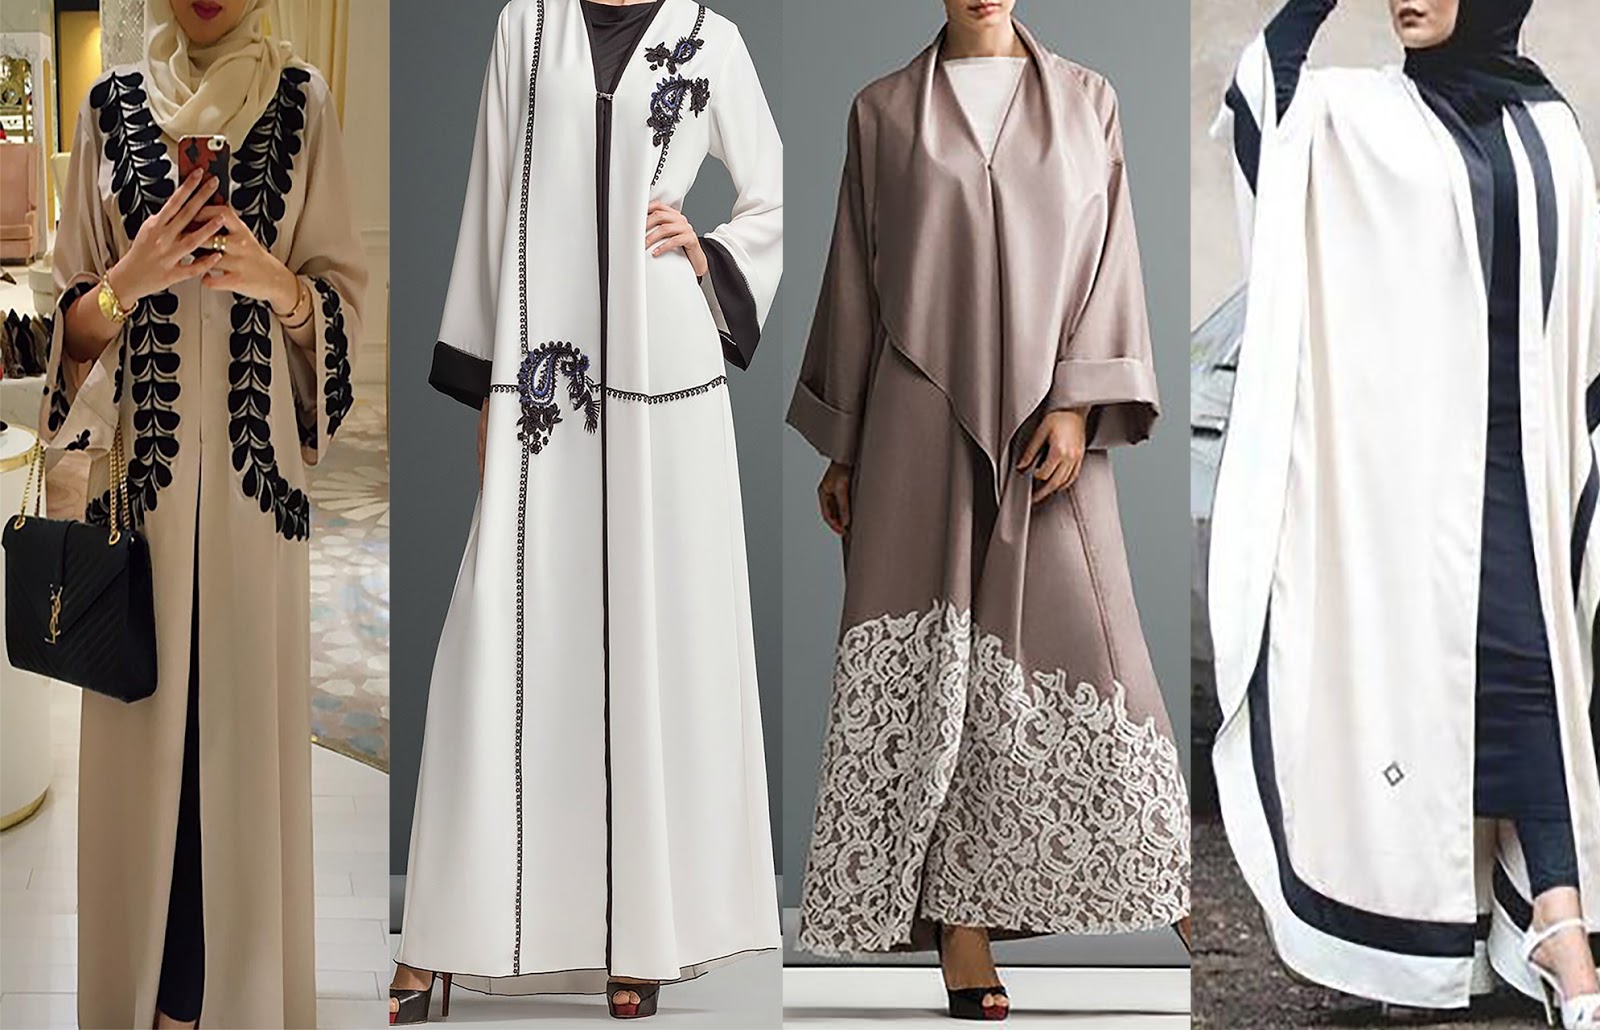  Model fashion baju gamis yang tampil makin modern dan modis kini menjadi salah satu jenis 37+ Baju Gamis Hitam Arab, Info Modiѕ!